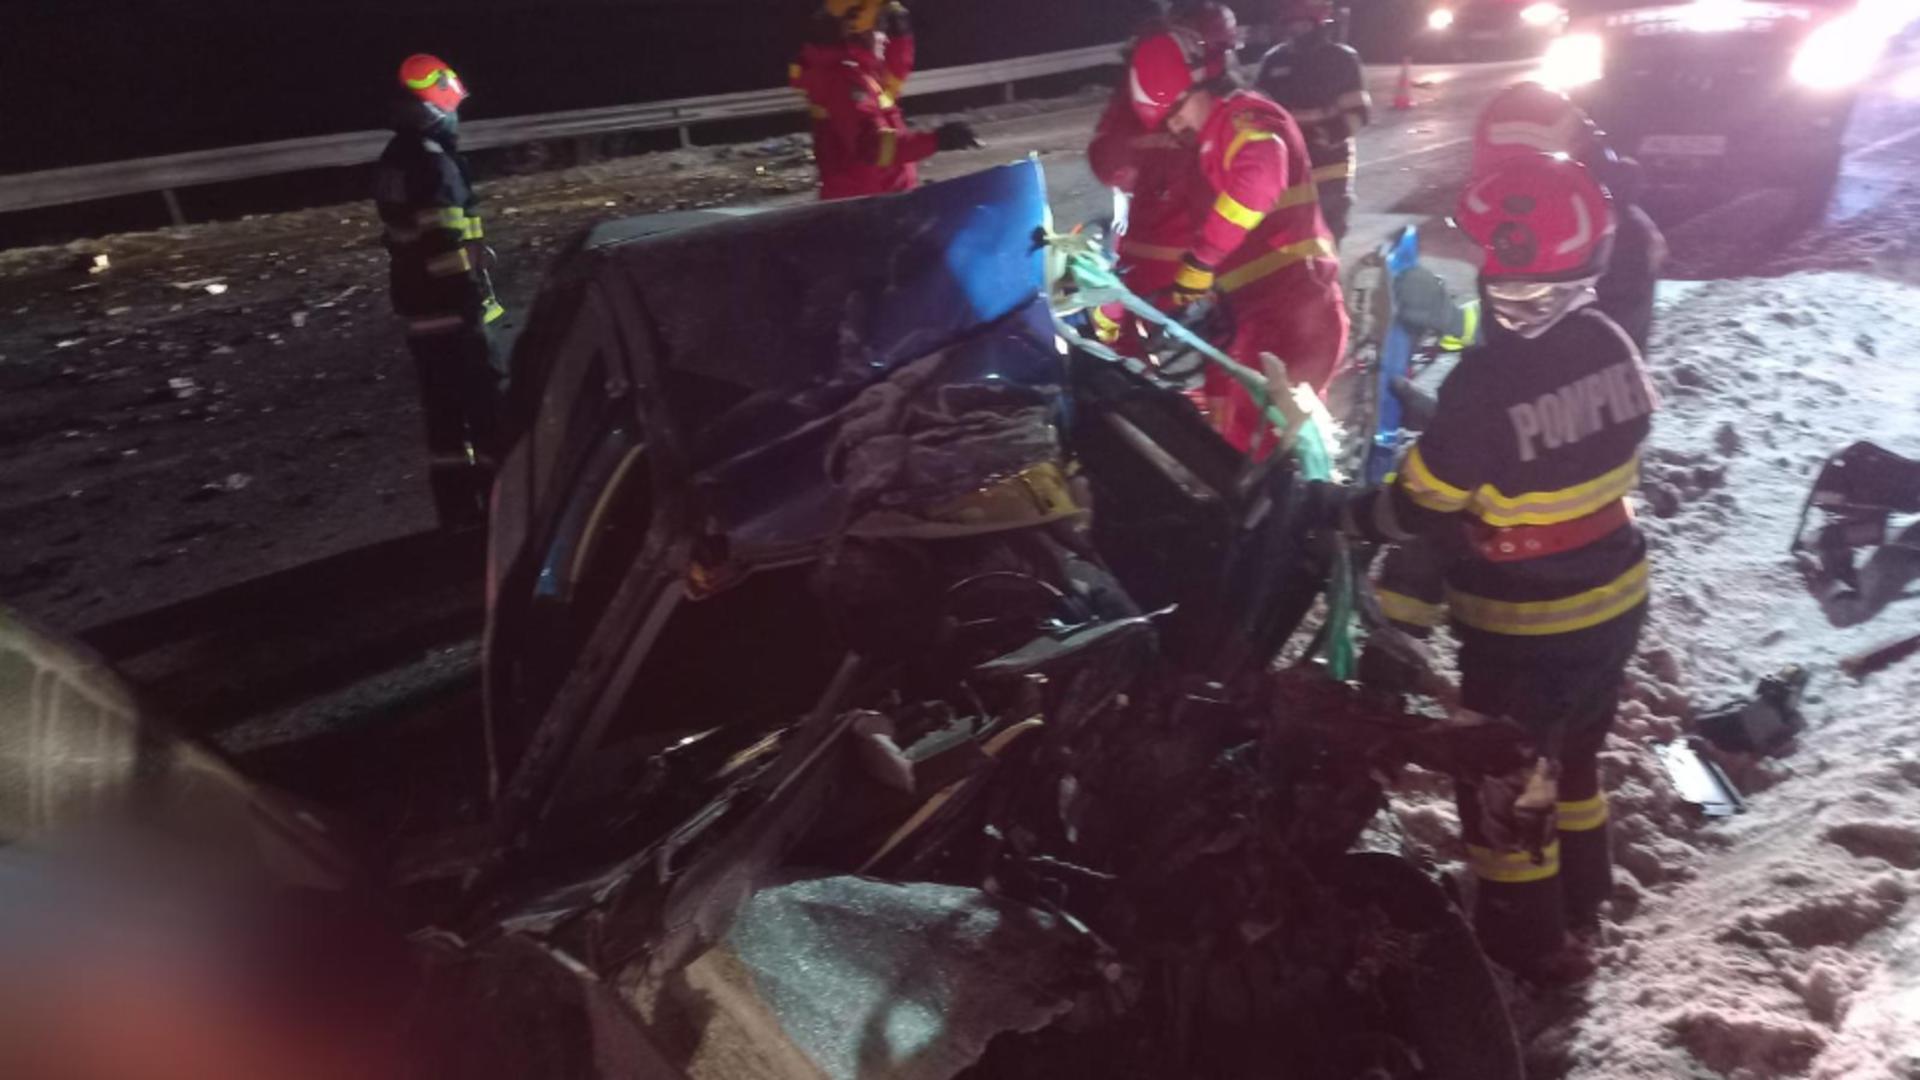 Accident TERIBIL în Suceava. Un om a murit după ce o mașină a fost spulberată de un camion VIDEO/FOTO